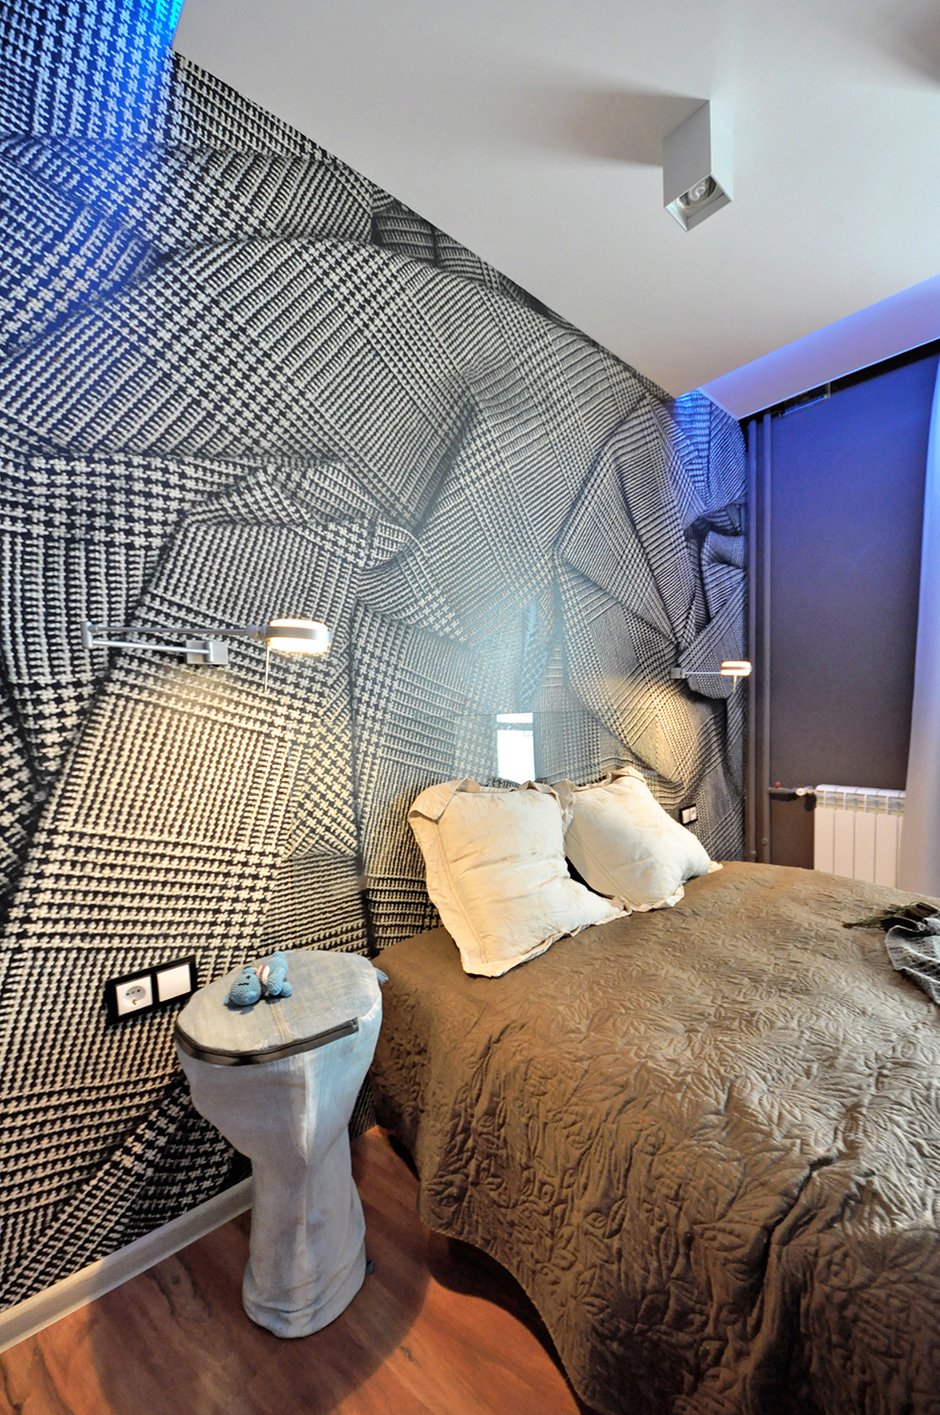 Фотография: Спальня в стиле Современный, Декор интерьера, Интерьер комнат, Проект недели – фото на INMYROOM